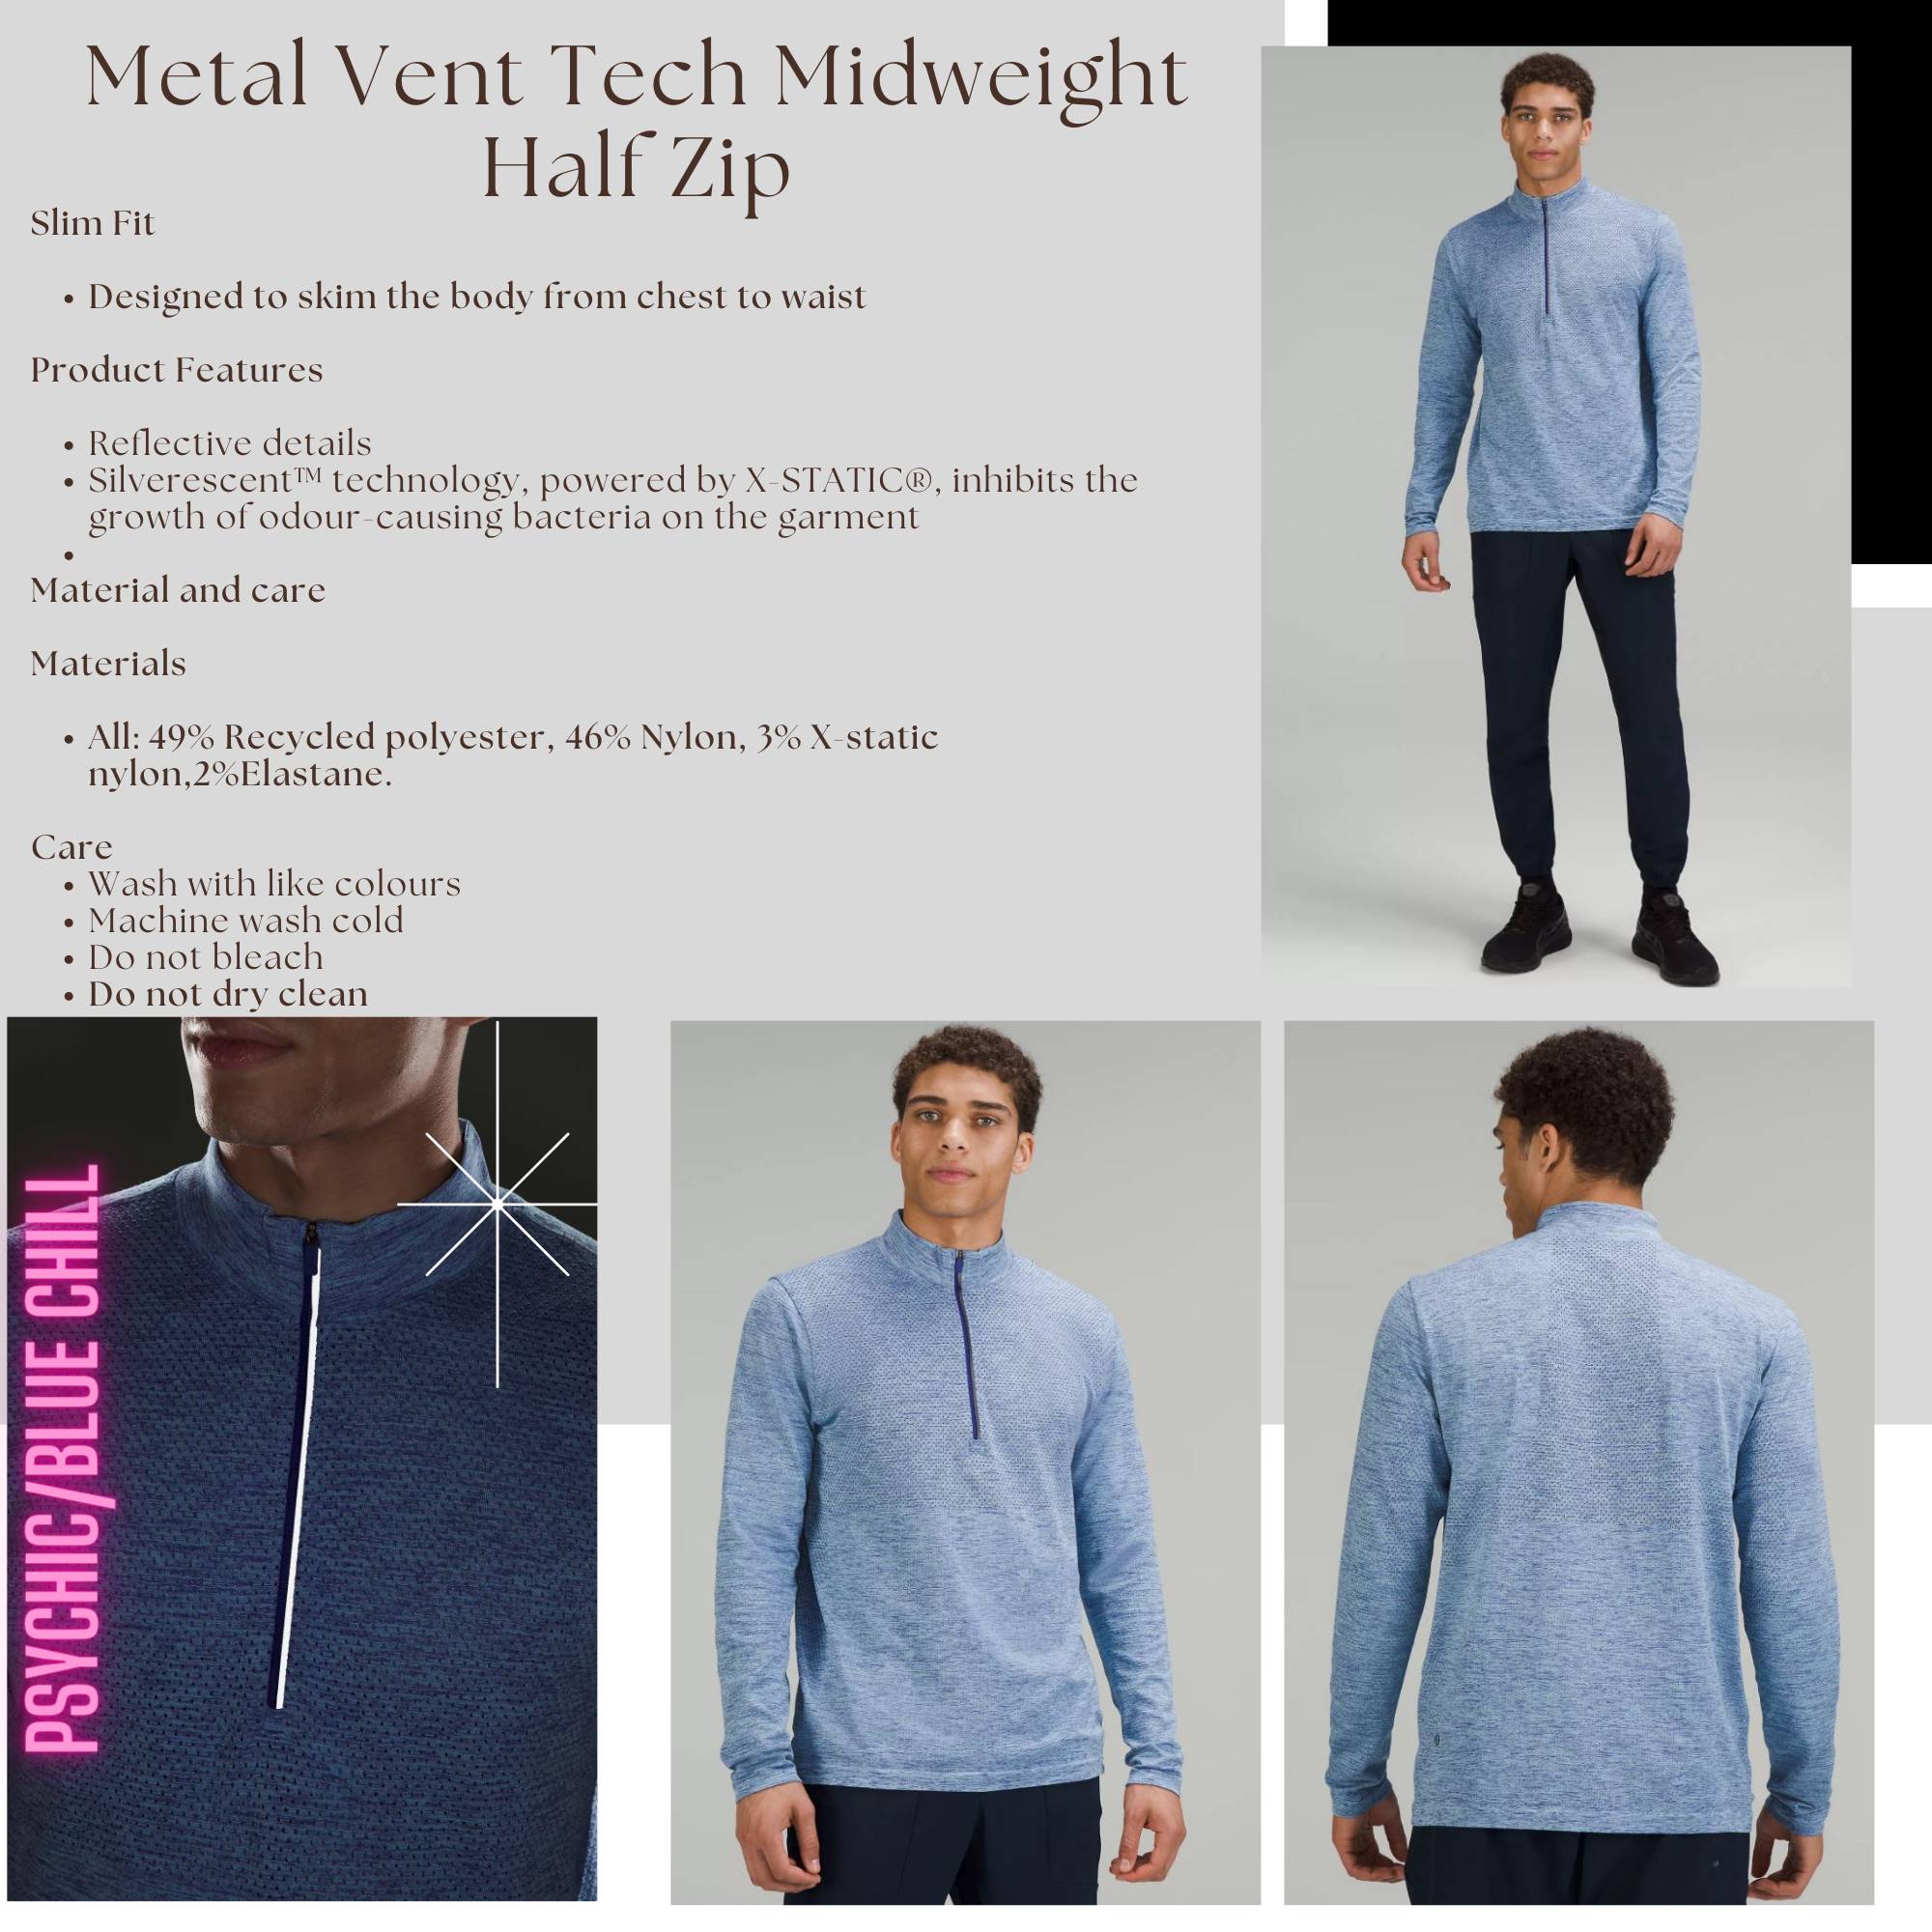 Metal Vent Tech Midweight Half Zip